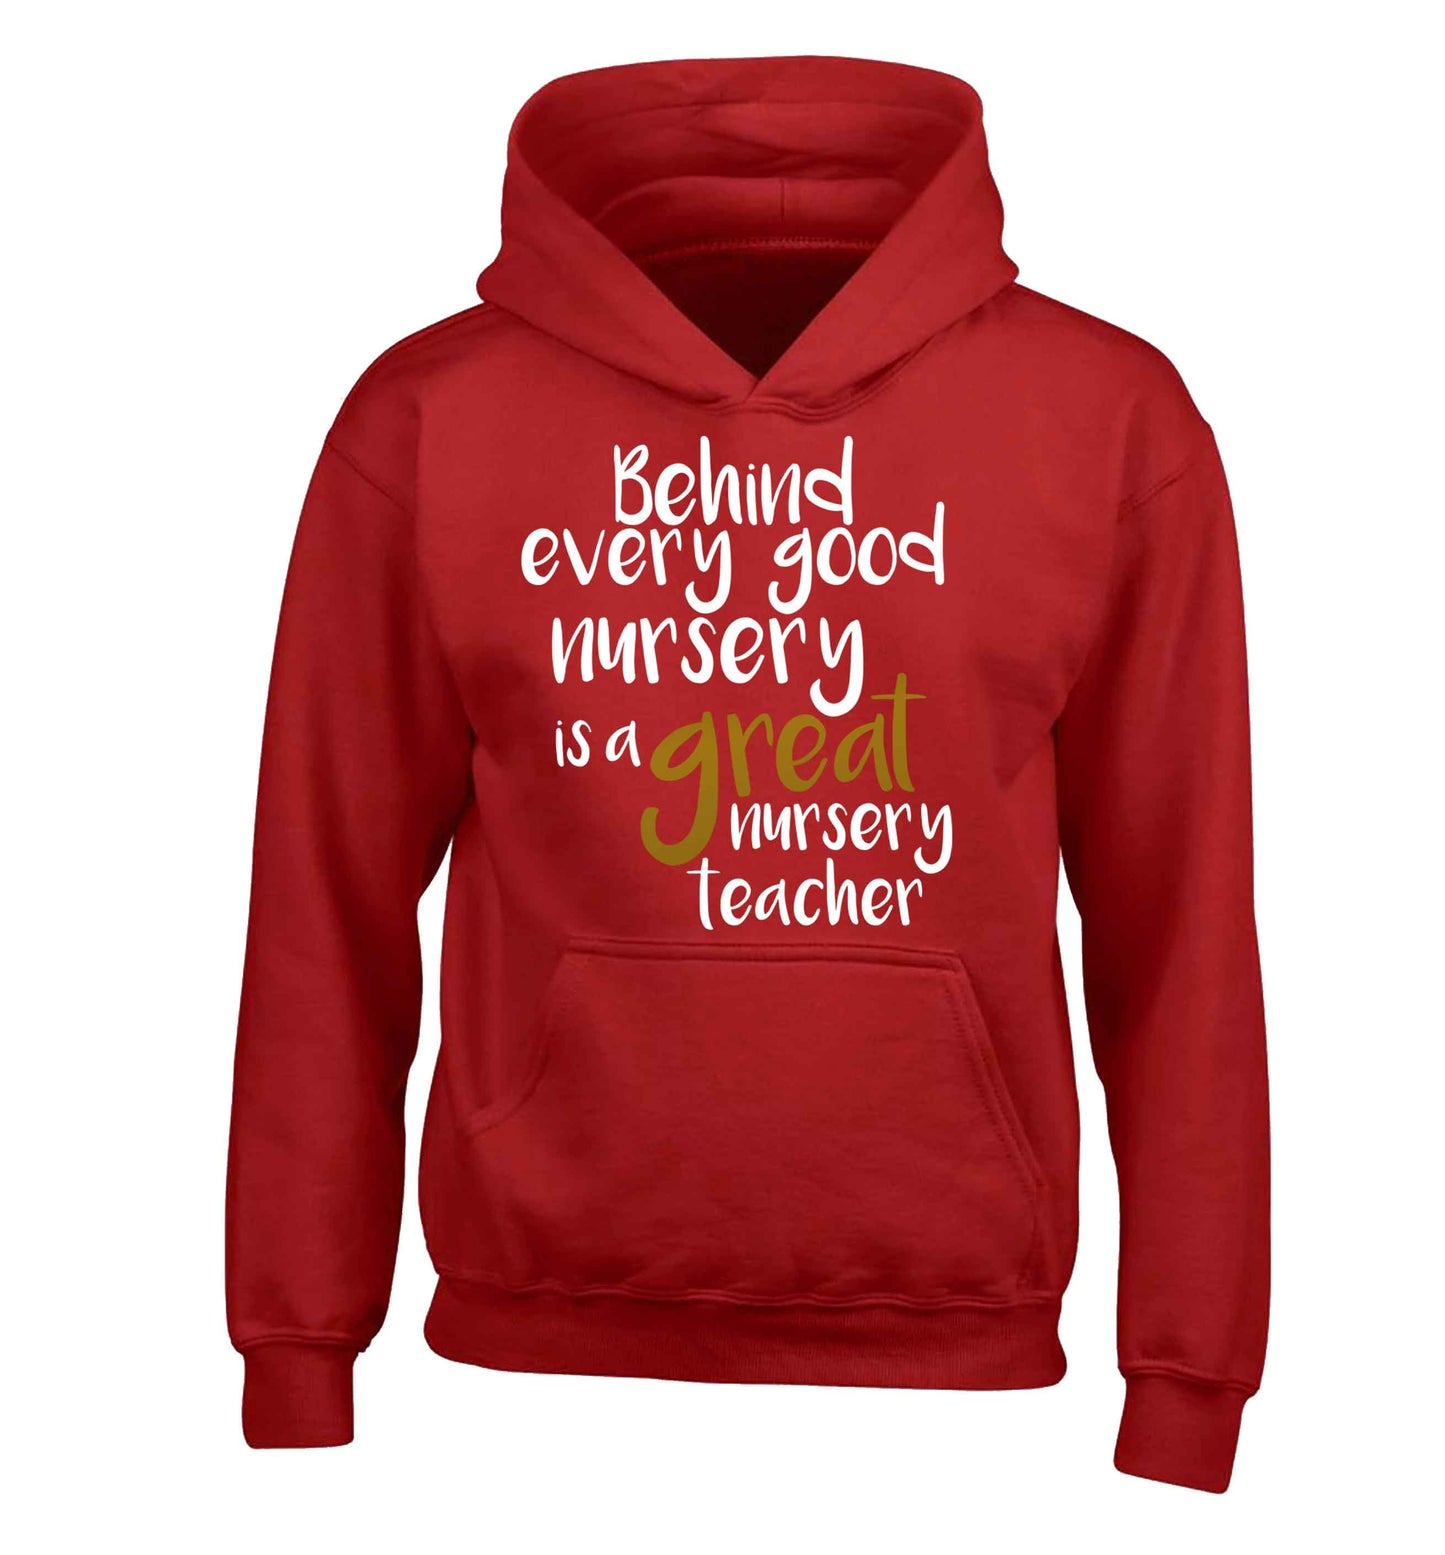 Behind every good nursery is a great nursery teacher children's red hoodie 12-13 Years